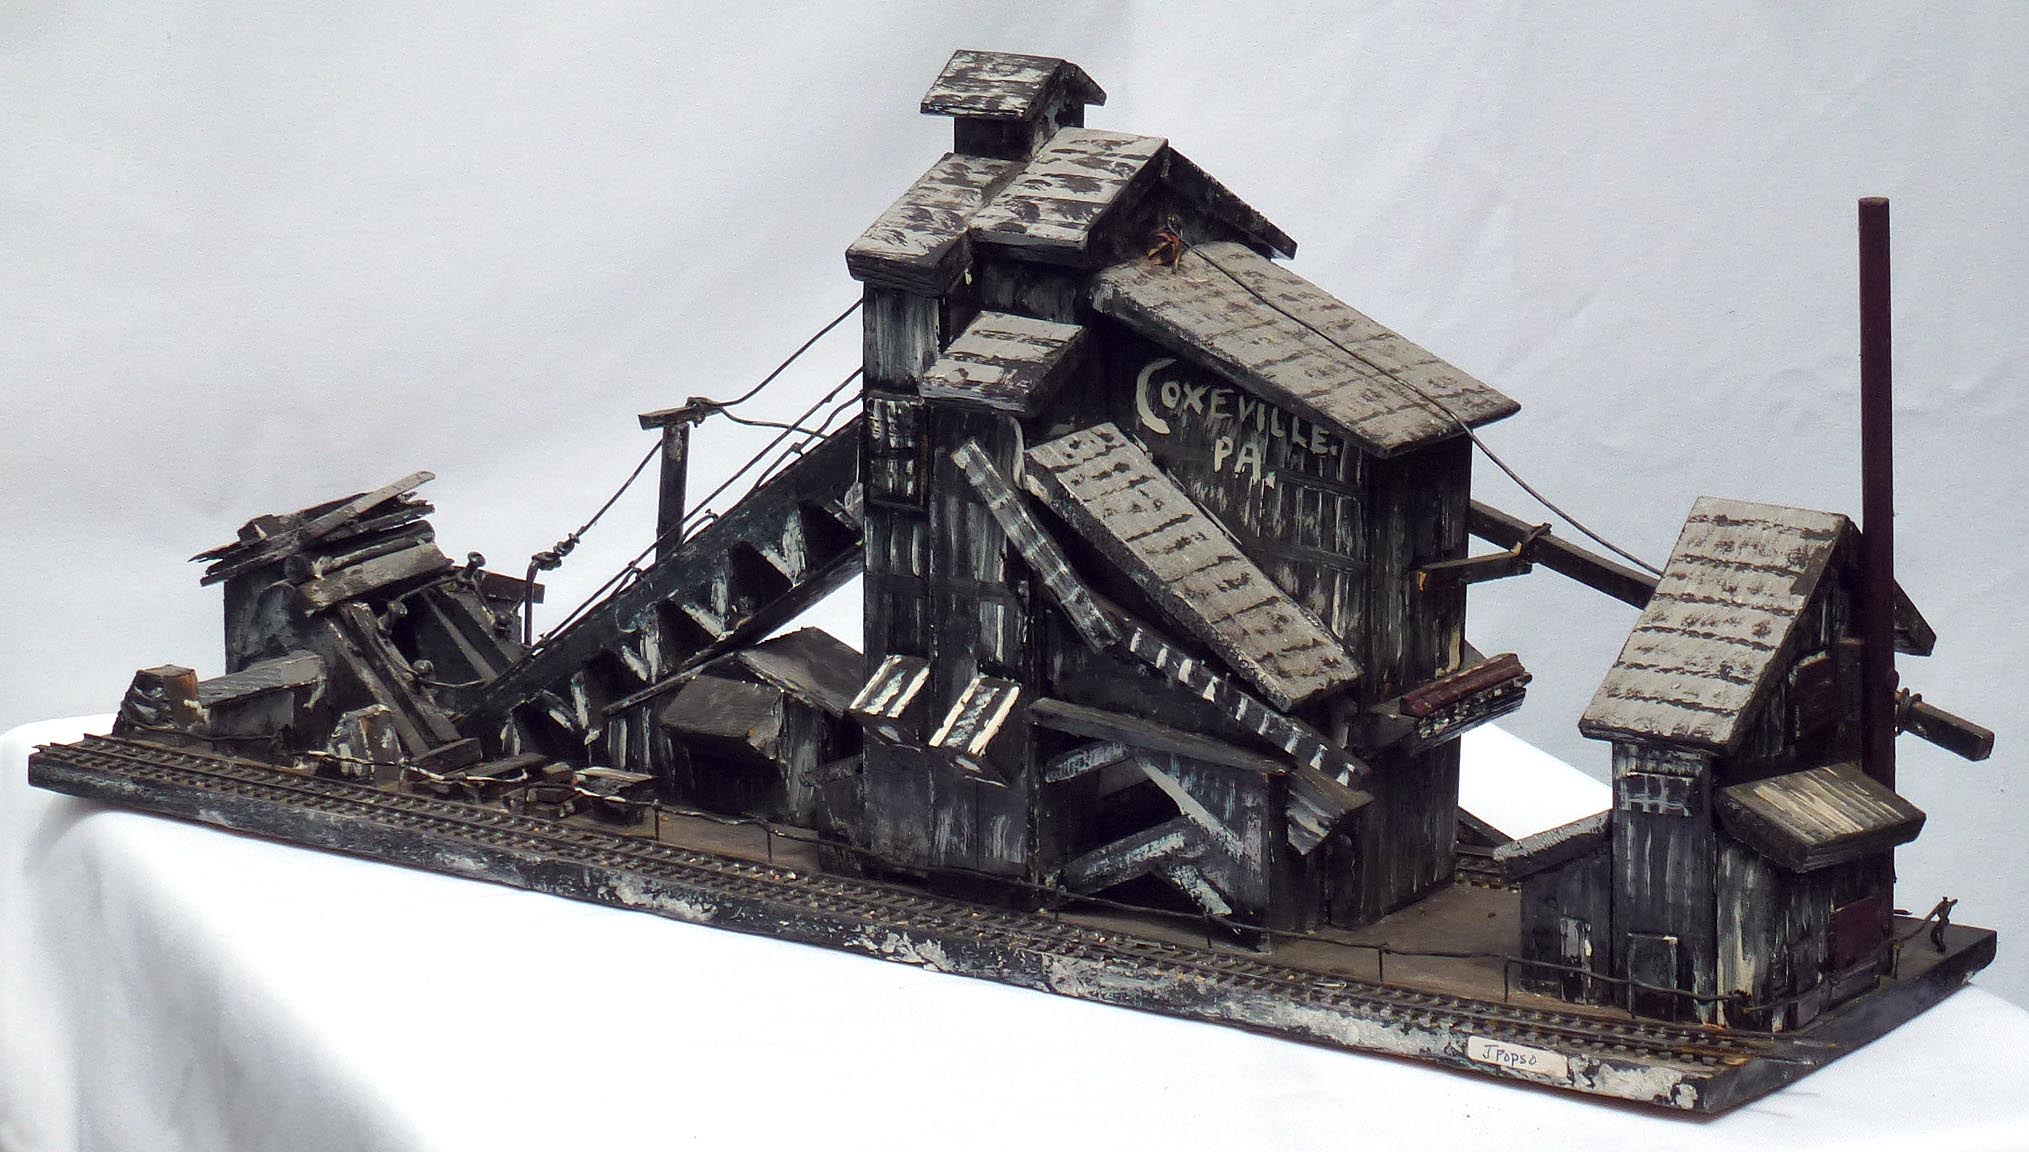 Coal breaker by Jim Popso